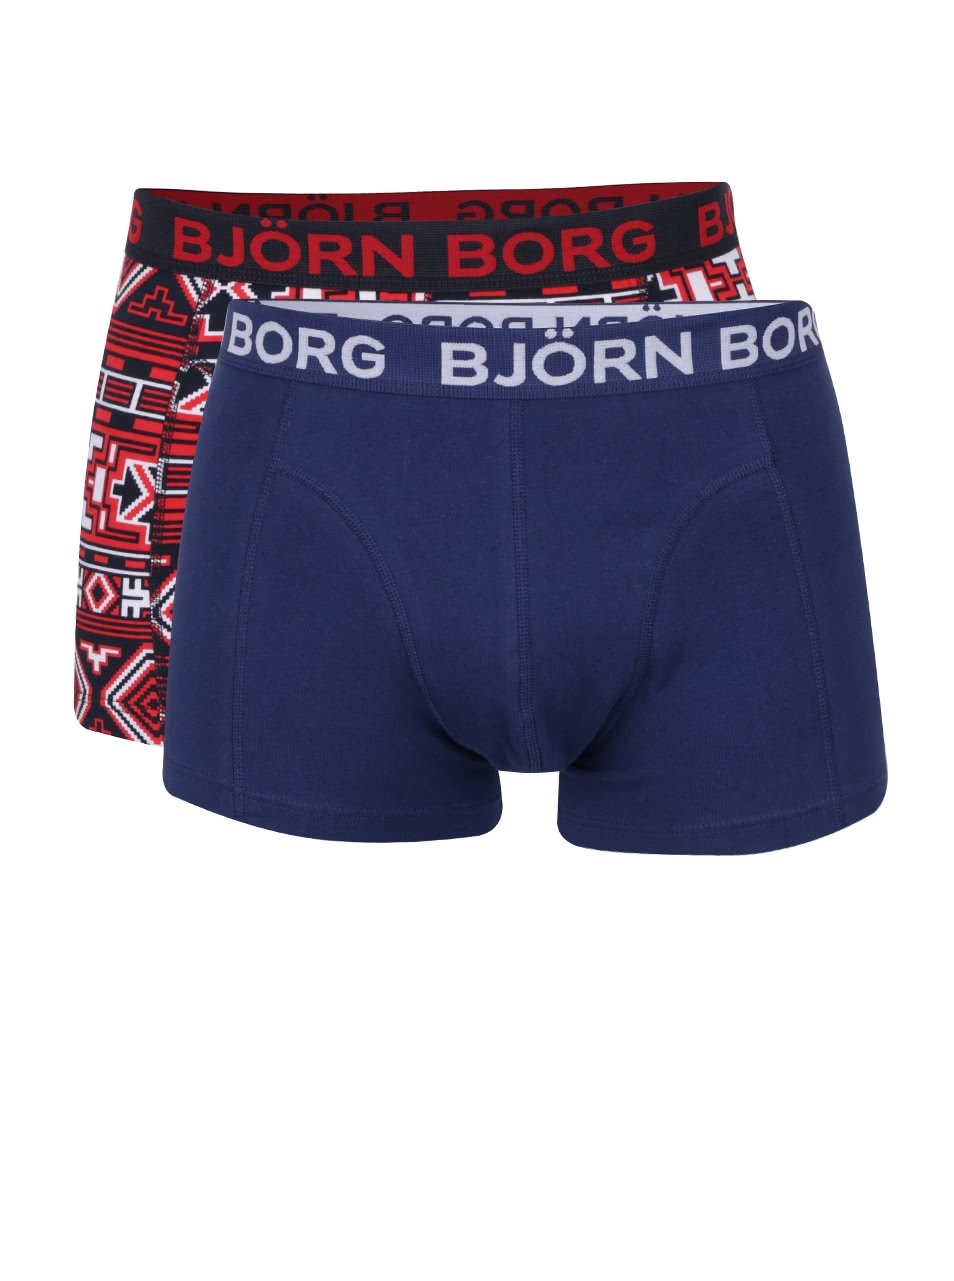 Sada dvou modrých a červeno-modrých boxerek Björn Borg